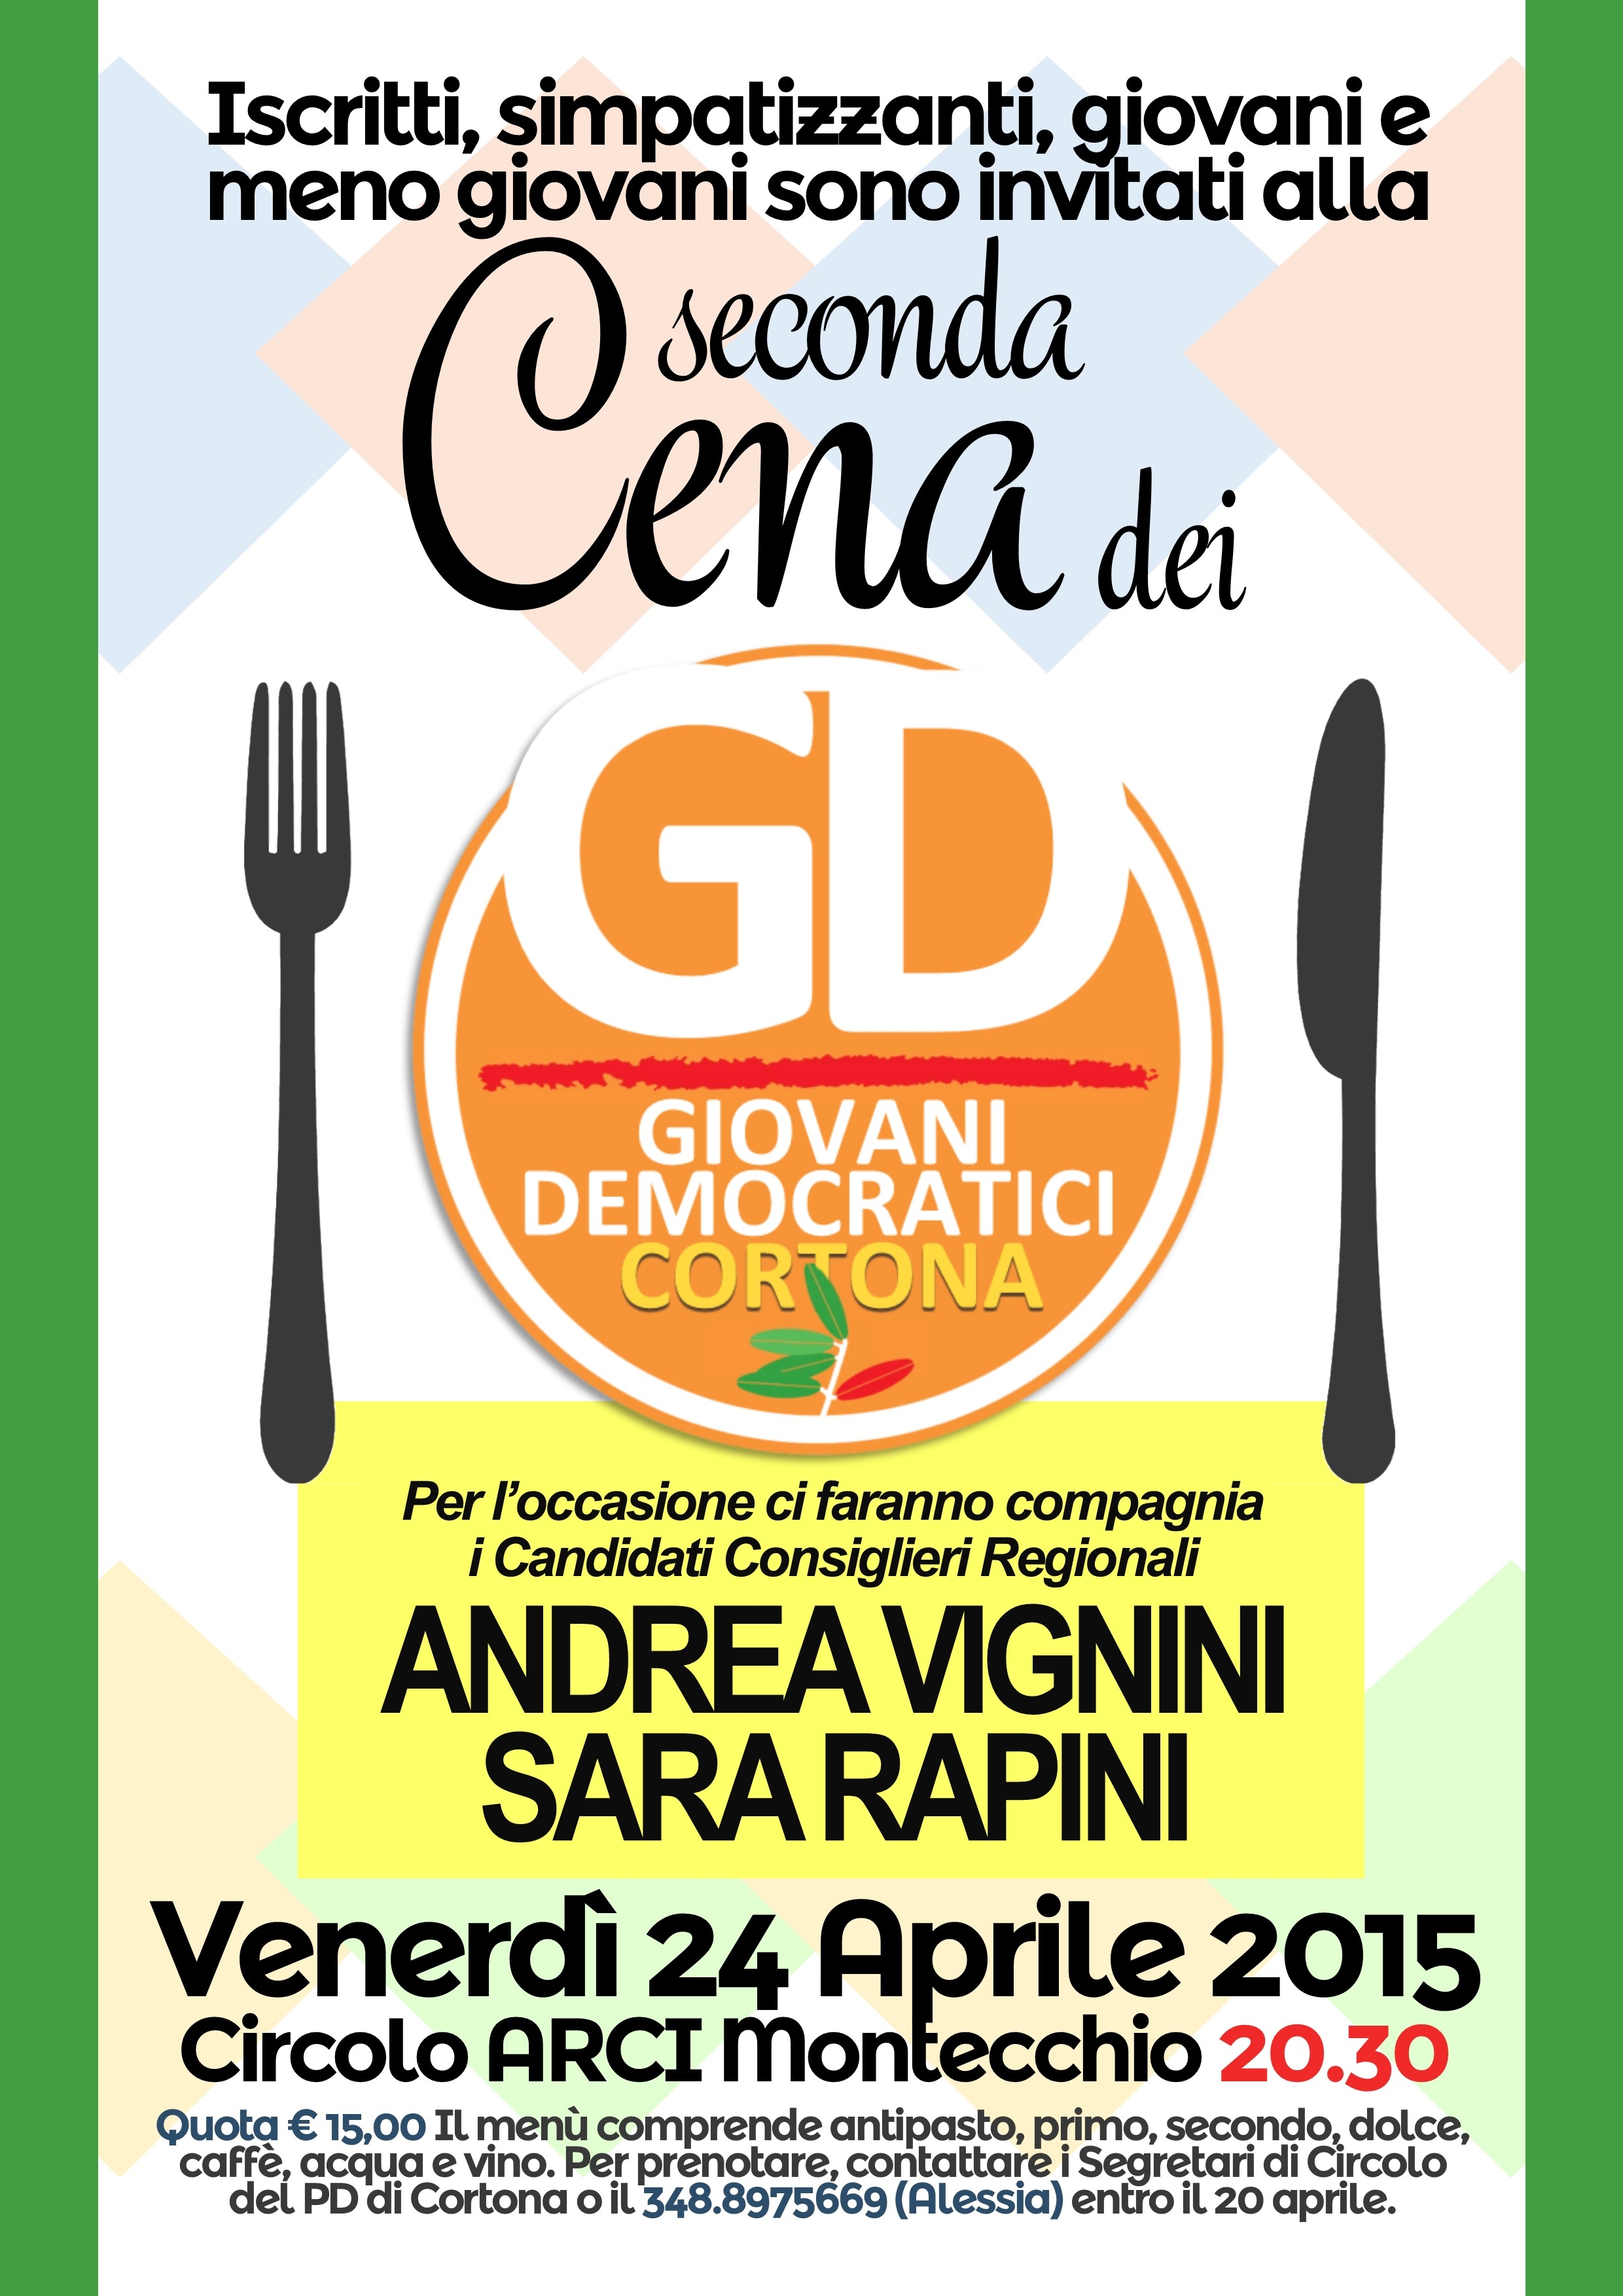 Cena dei Giovani Democratici di Cortona a Montecchio